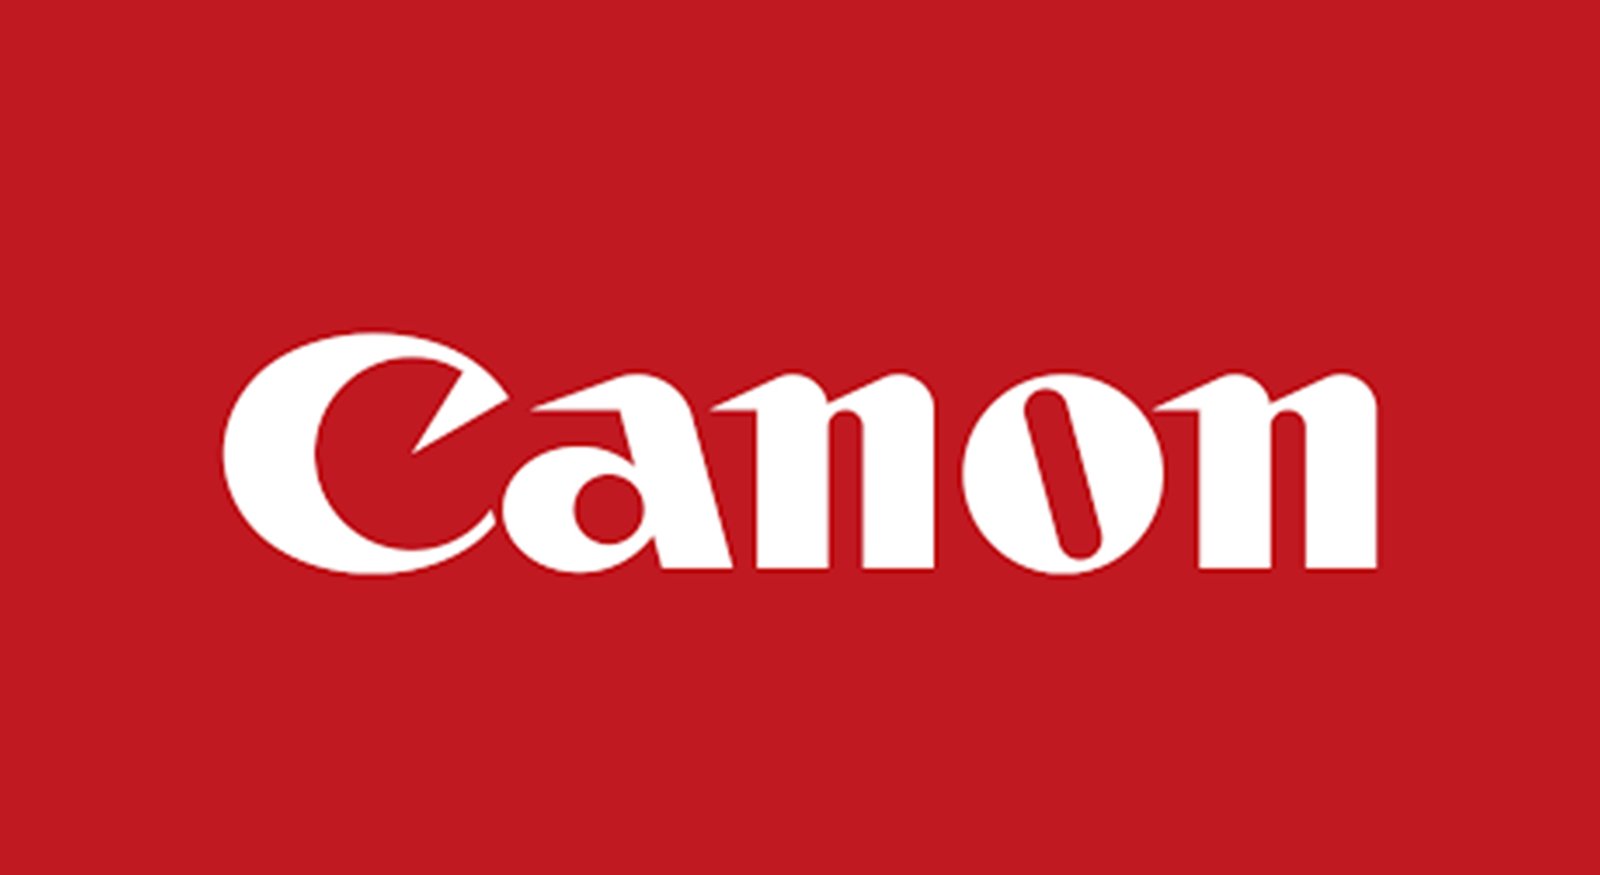 Canon: it clicks